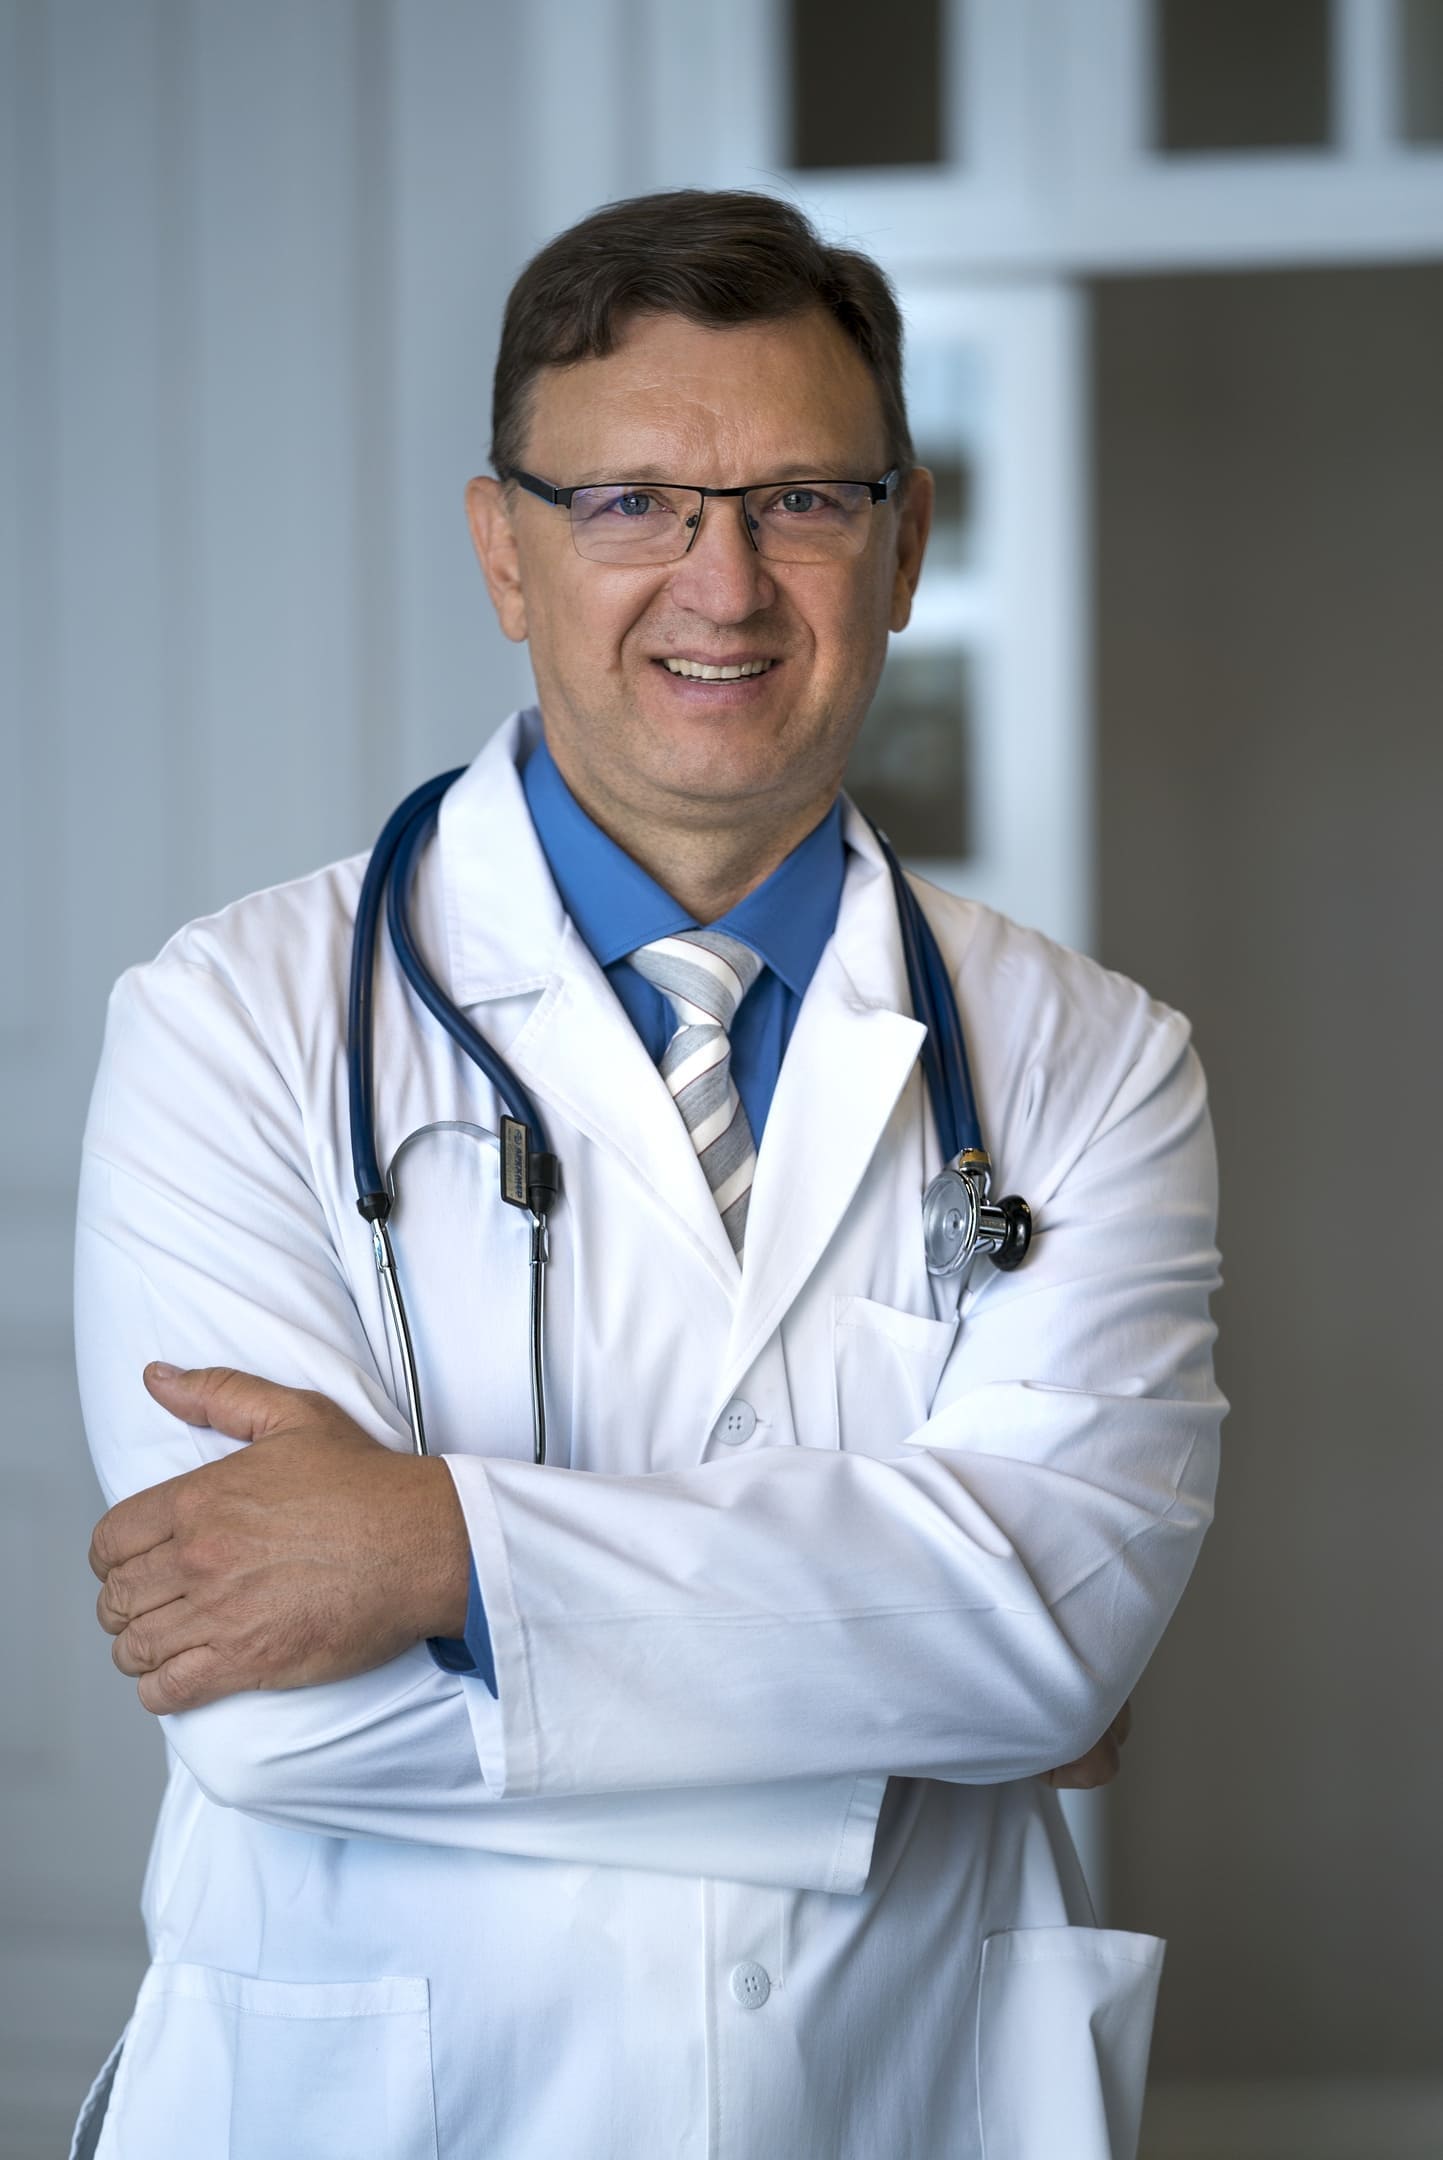 Иманбаев Эркен Мадимарович, главный врач клиники Профессиональная медицина и эксперт Центра психического здоровья и анонимной помощи Mypsyhealth - Майпсихелс